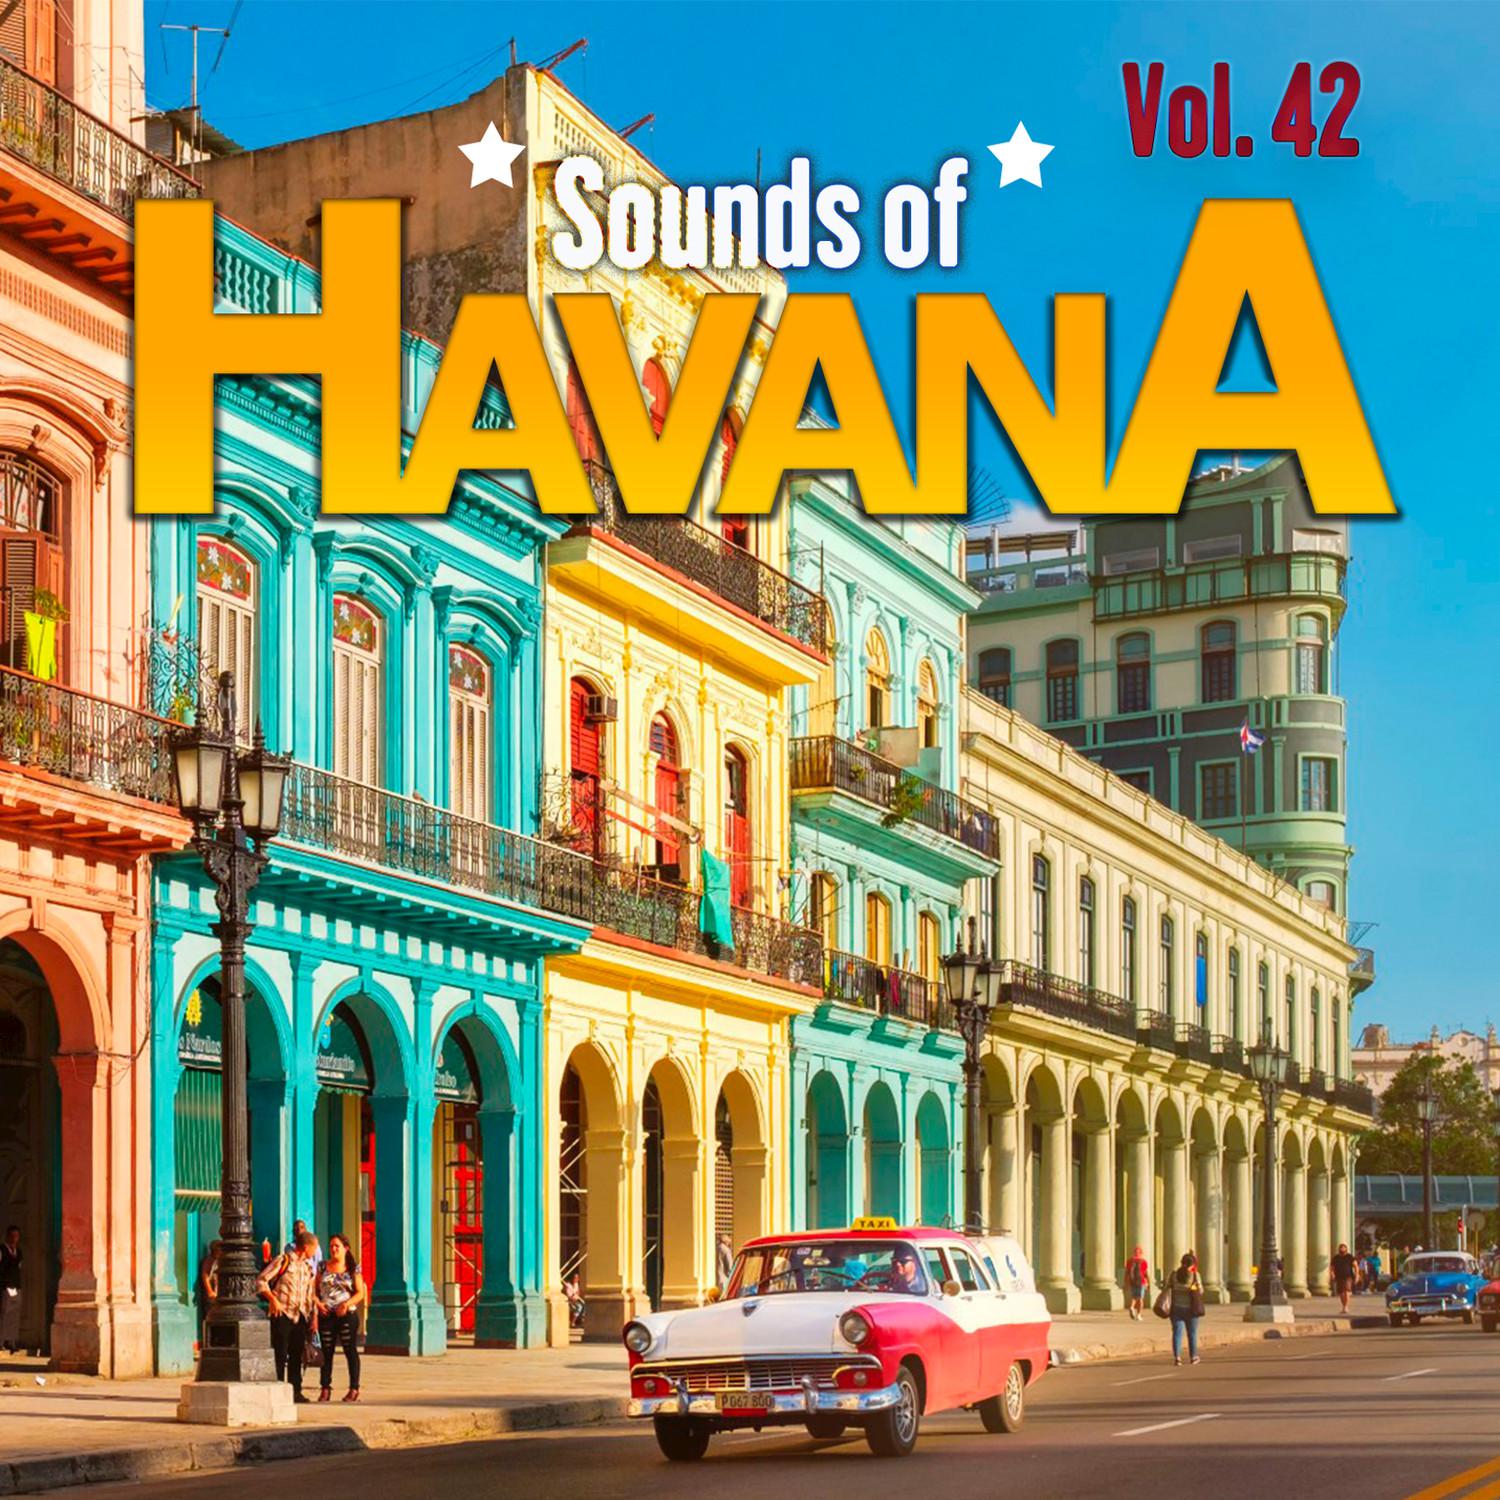 Sounds of Havana, Vol. 42